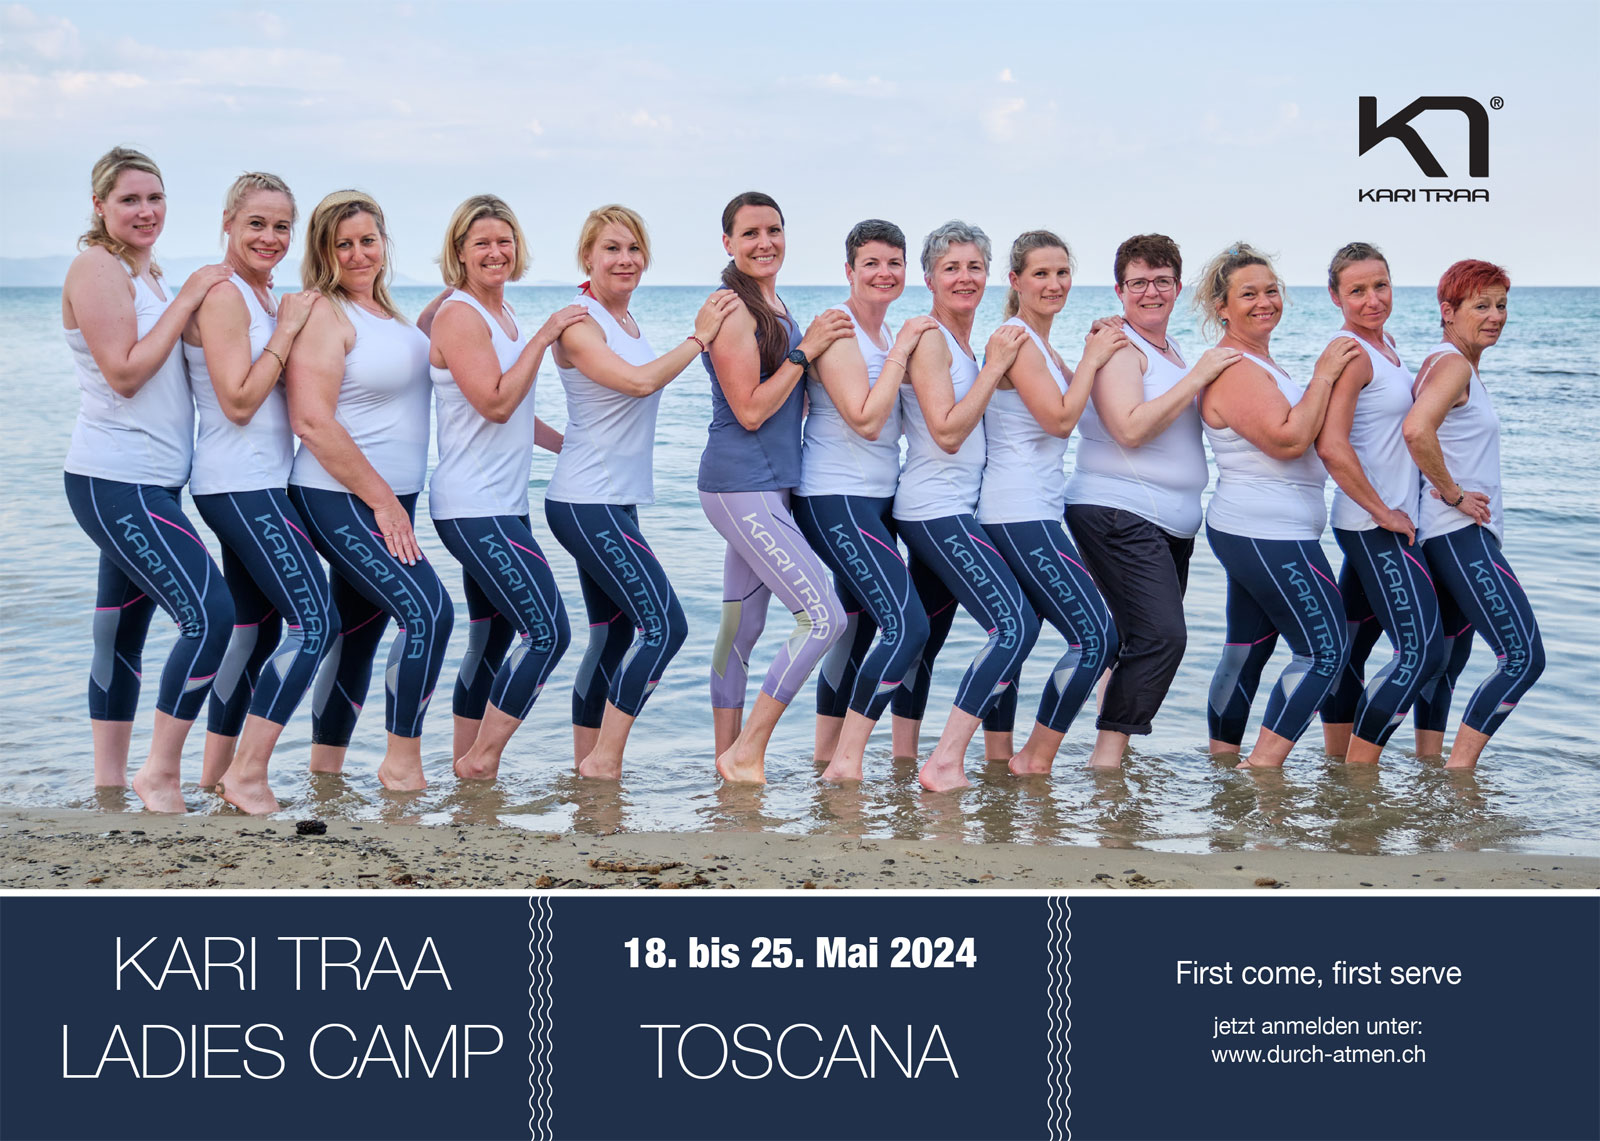 karitraa_ladiescamp_toscana